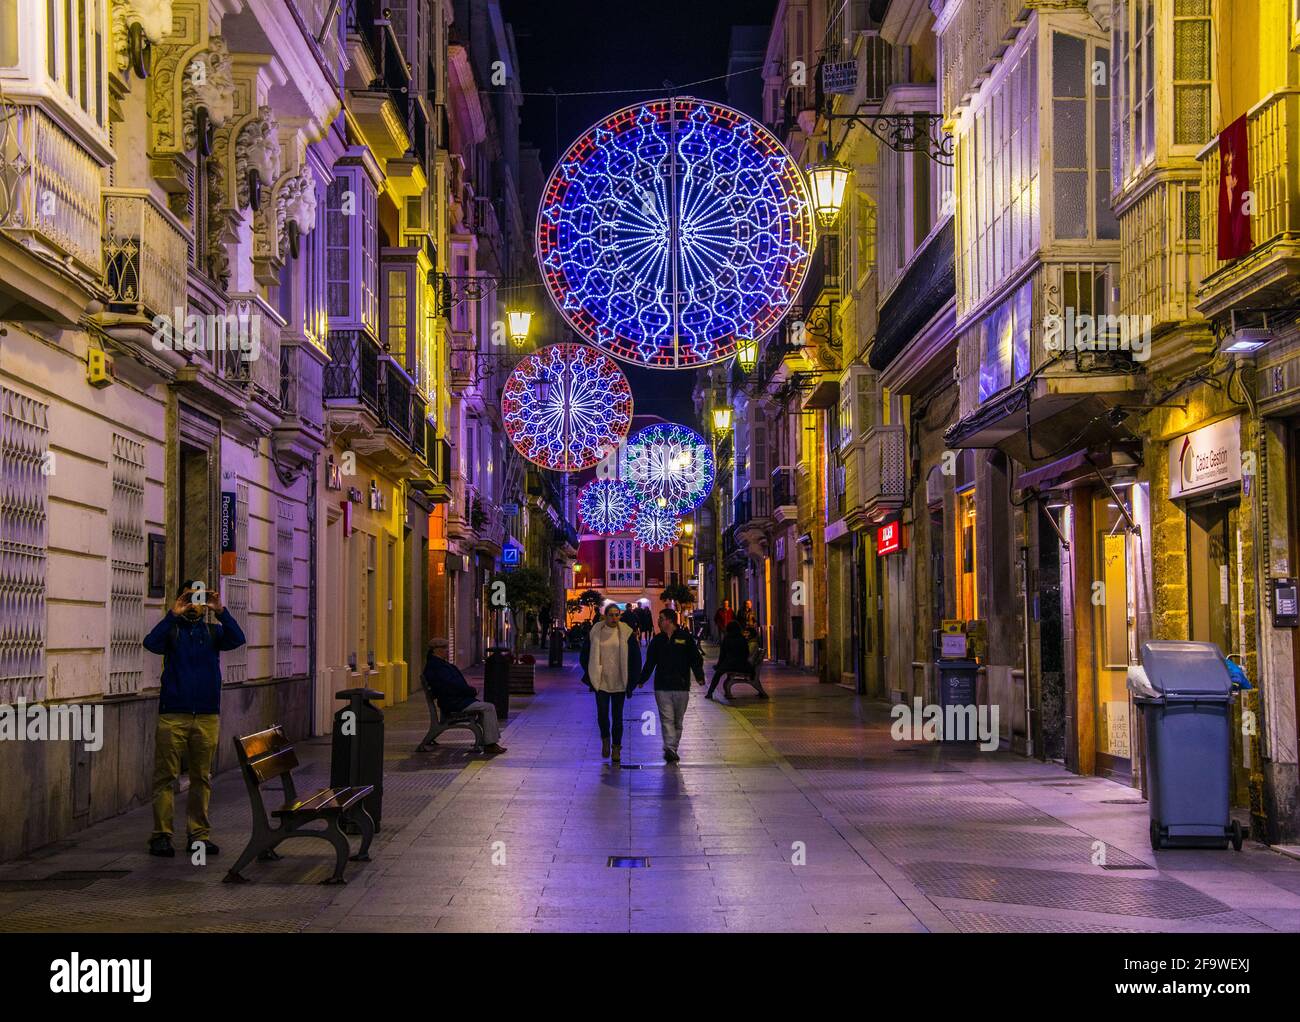 CADIZ, SPAGNA, 6 GENNAIO 2016: La gente sta passeggiando su calle ancha Street nel centro storico della città spagnola cadiz durante la notte Foto Stock